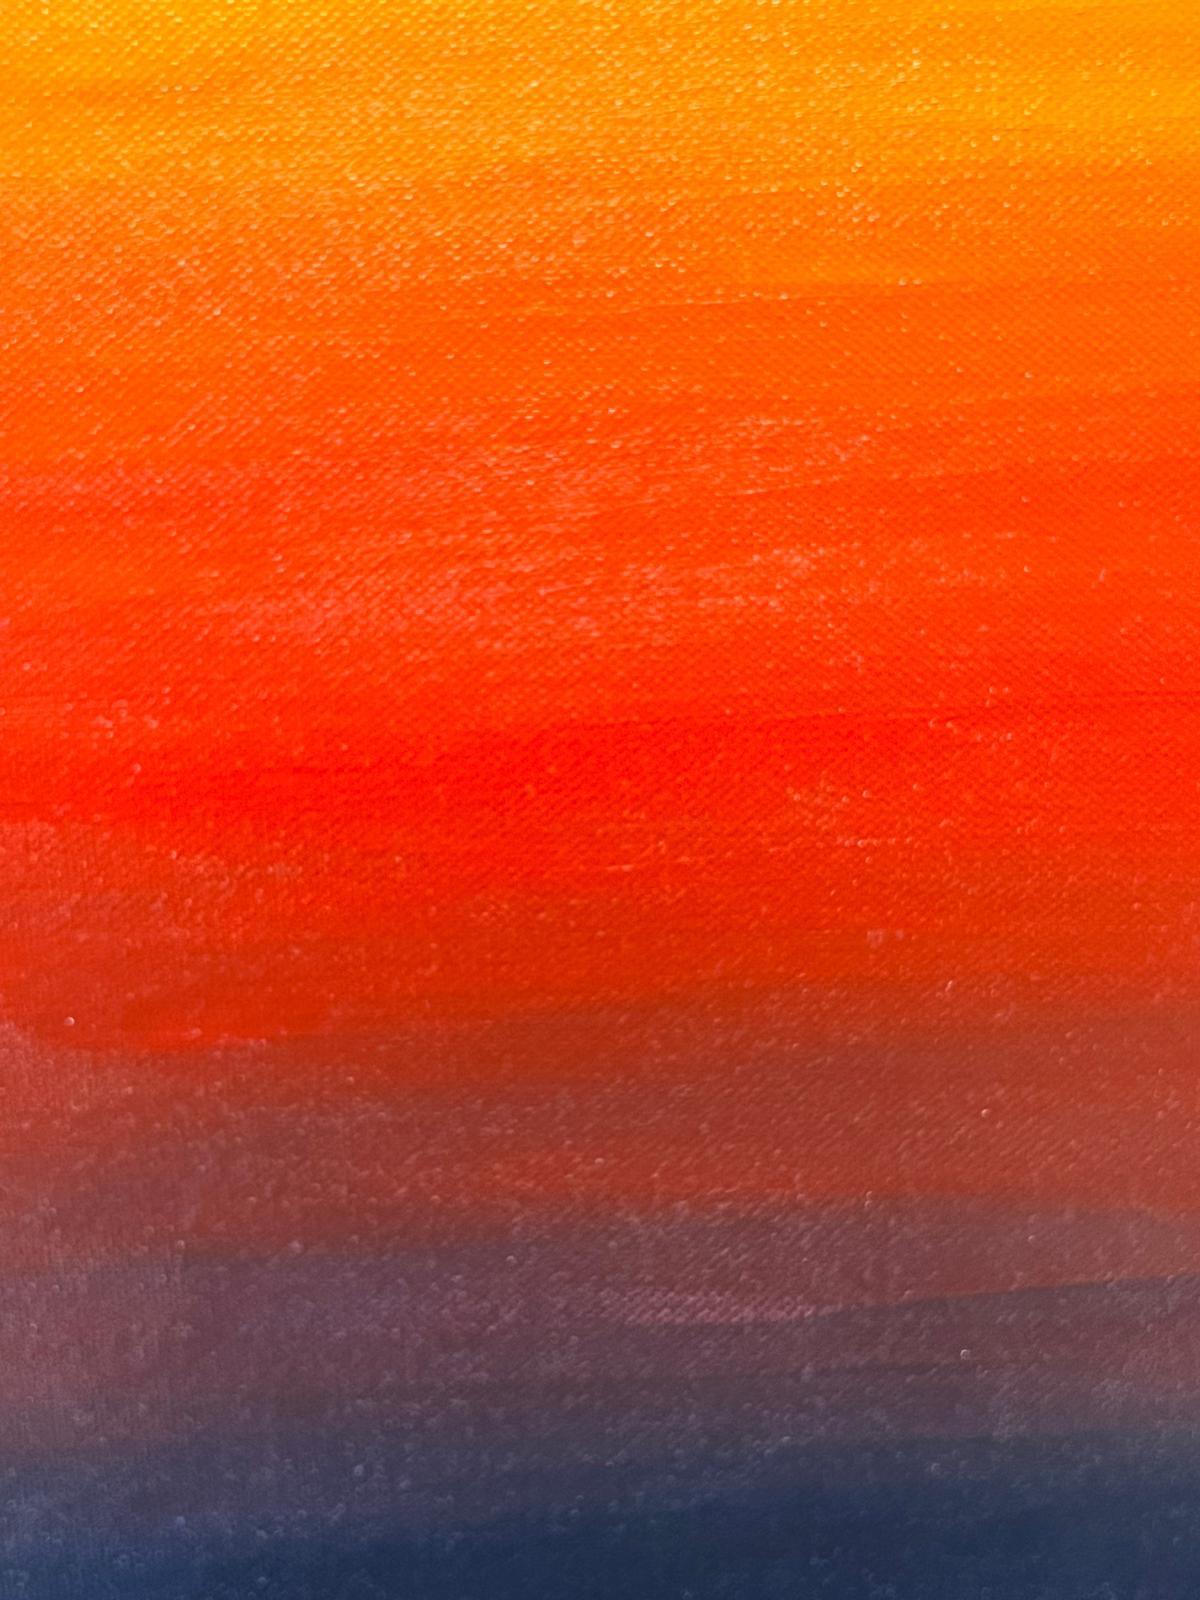 Großes zeitgenössisches britisches modernistisches Gemälde mit Sonnenuntergang und Farbblaze – Painting von Contemporary British 